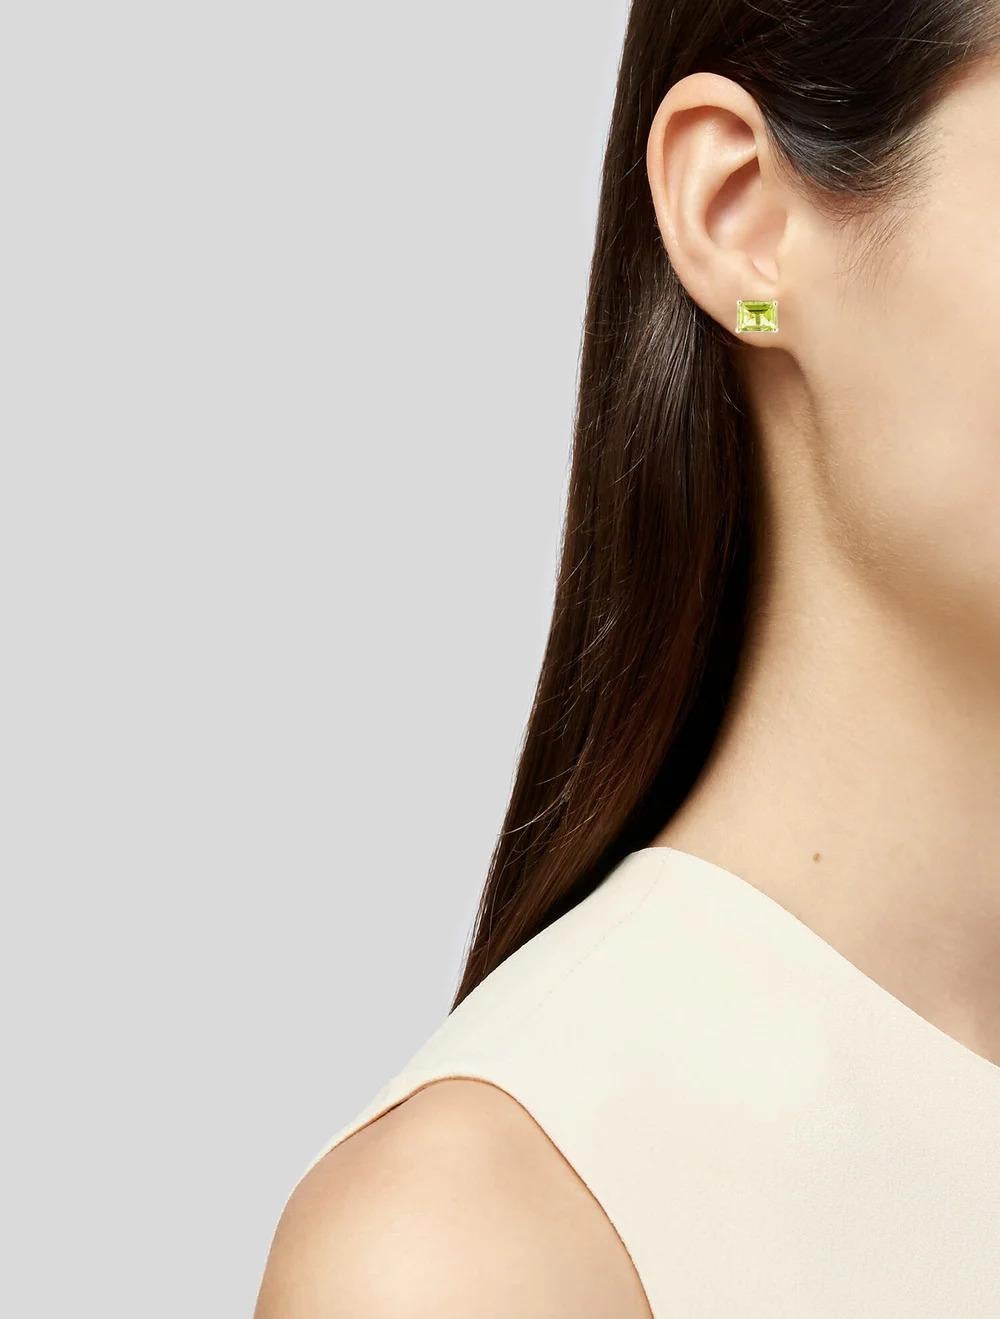 Emerald Cut 14K Peridot Stud Earrings, 3.74ctw - Green Gemstone, Luxury Statement Jewelry For Sale